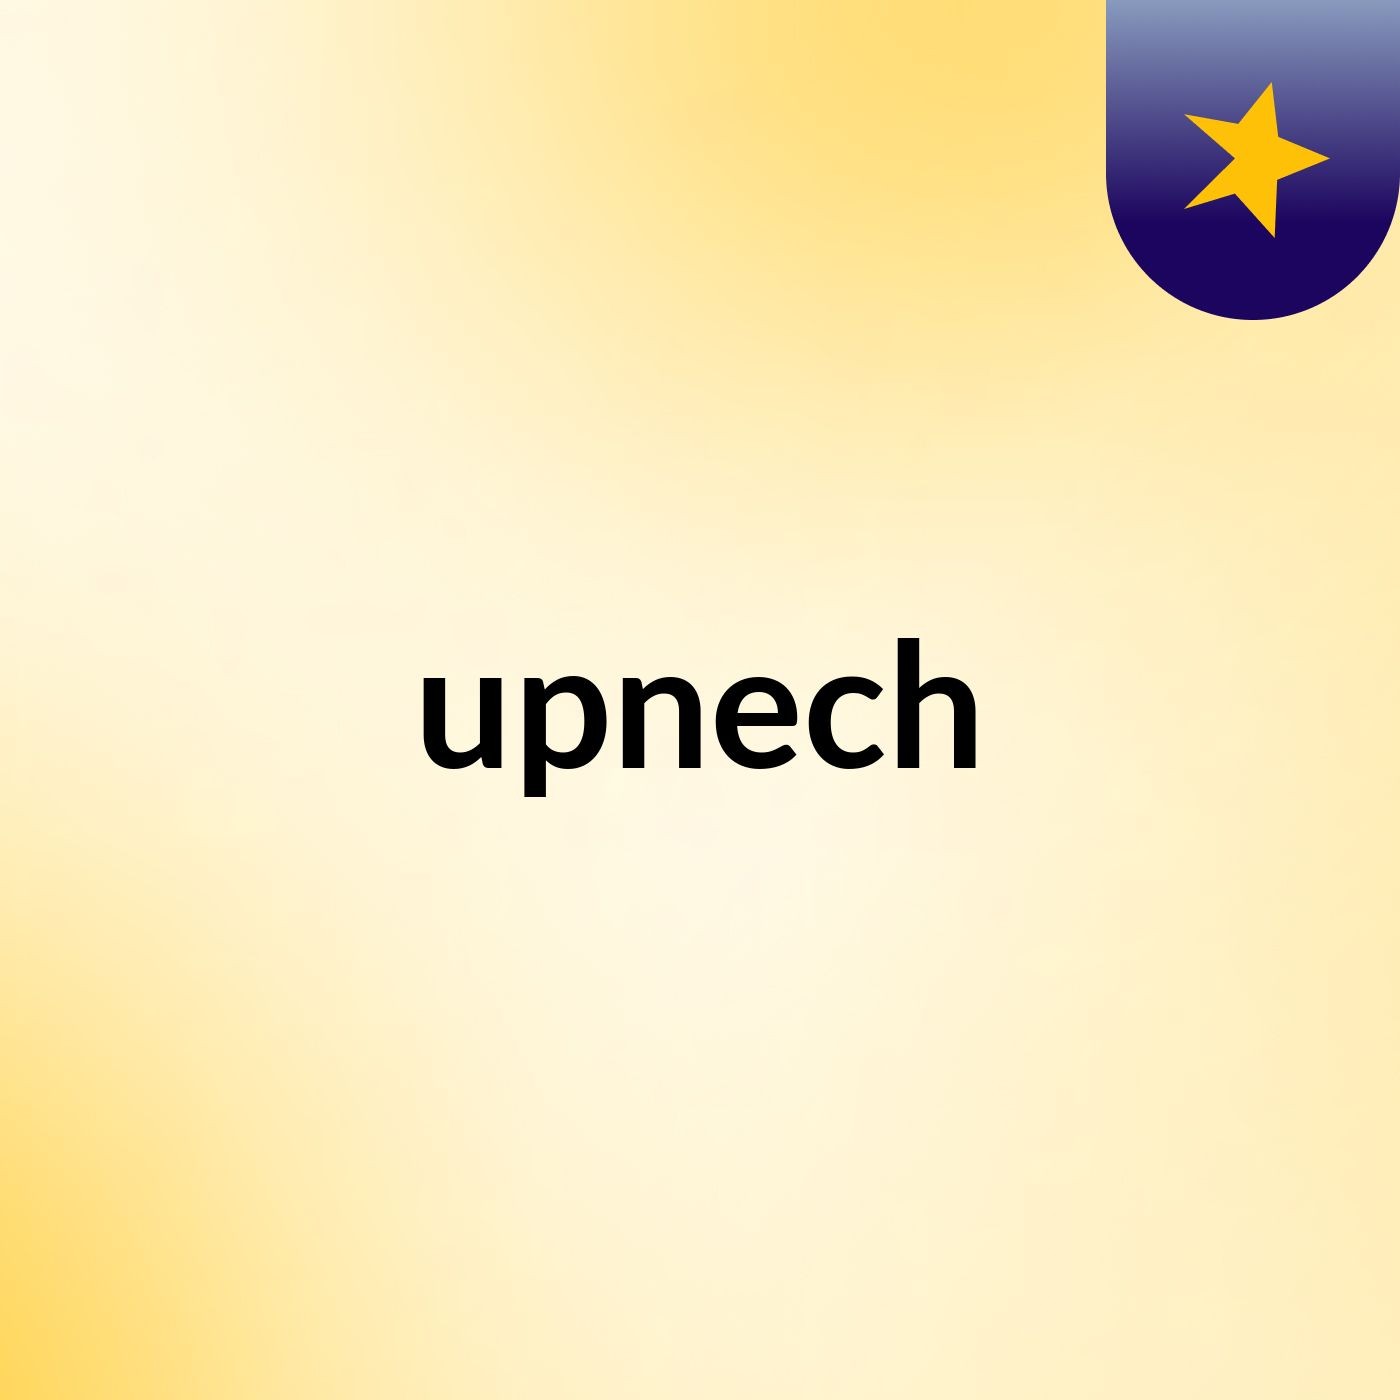 upnech